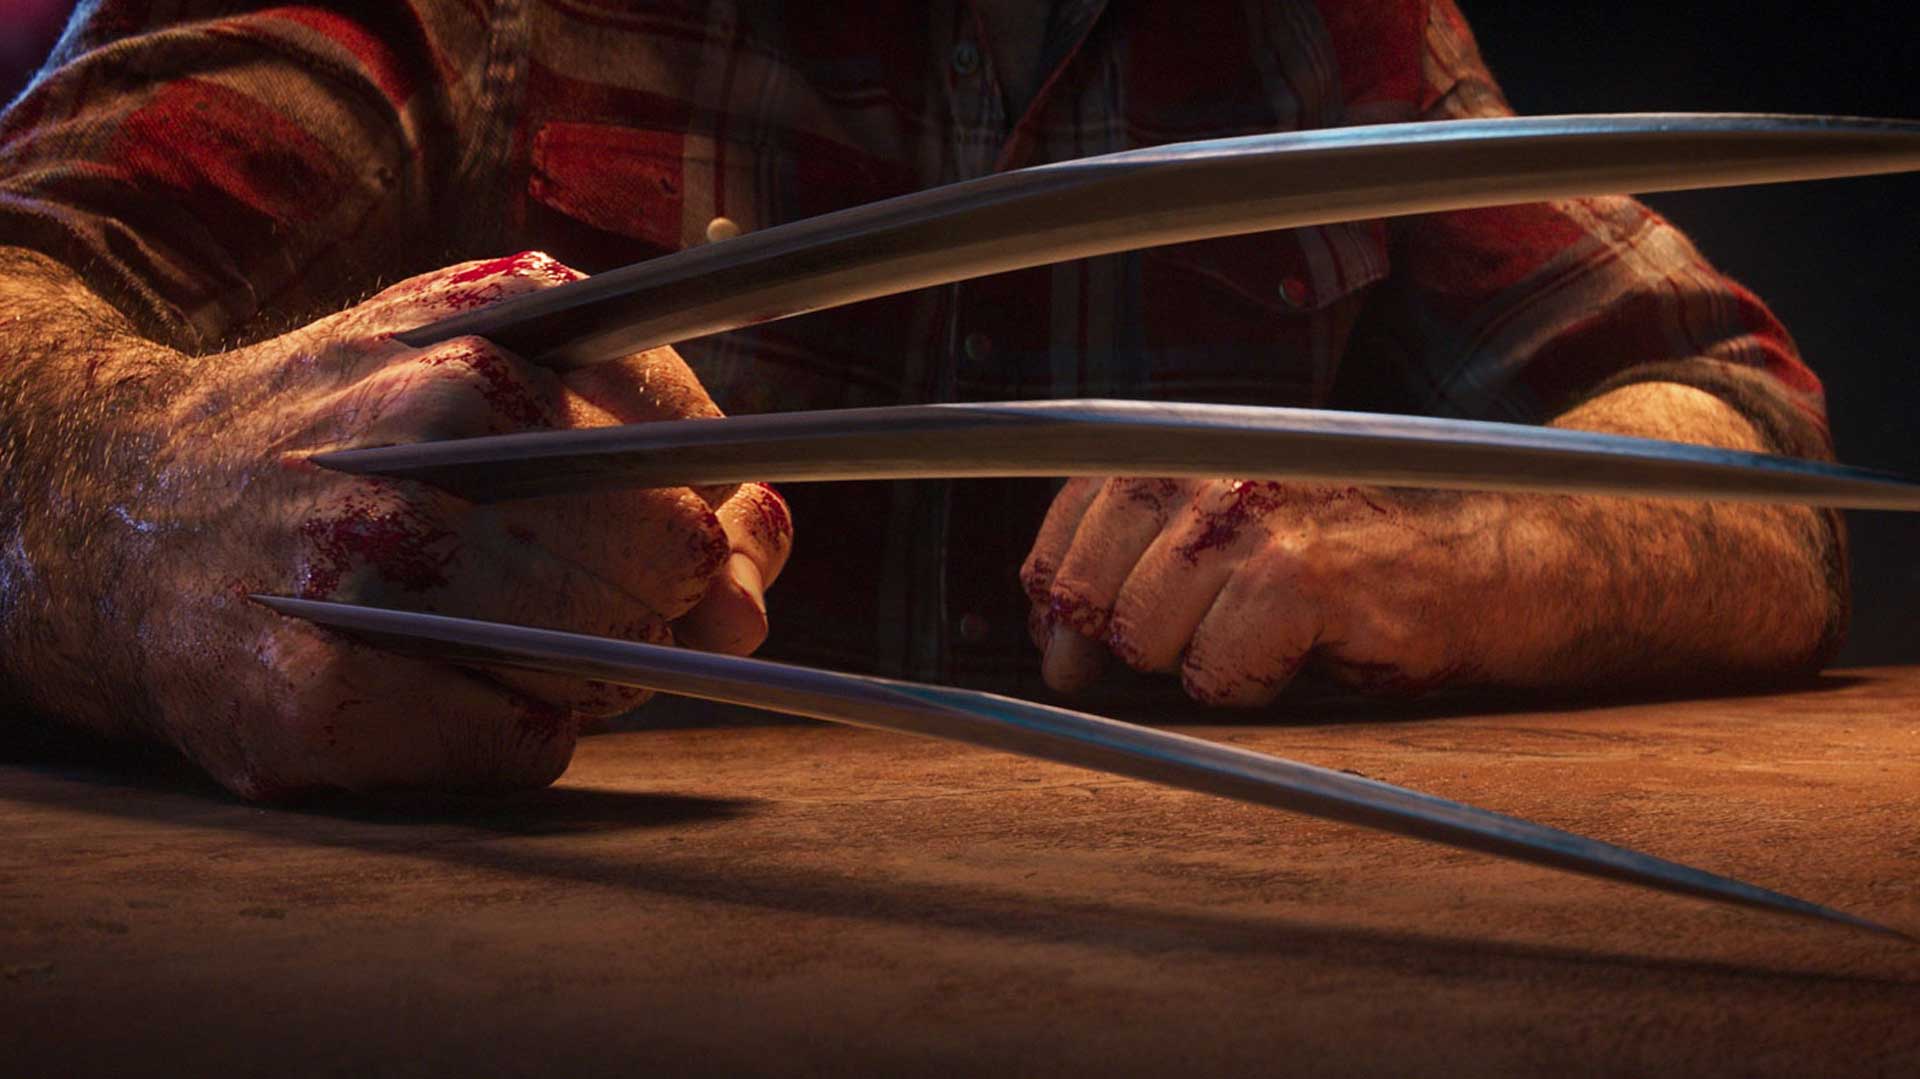 تیغه های تیز و خونین از دست ولورین در بازی انحصاری استودیوی Insomniac Games برای سونی پلی استیشن 5 بیرون می آید.